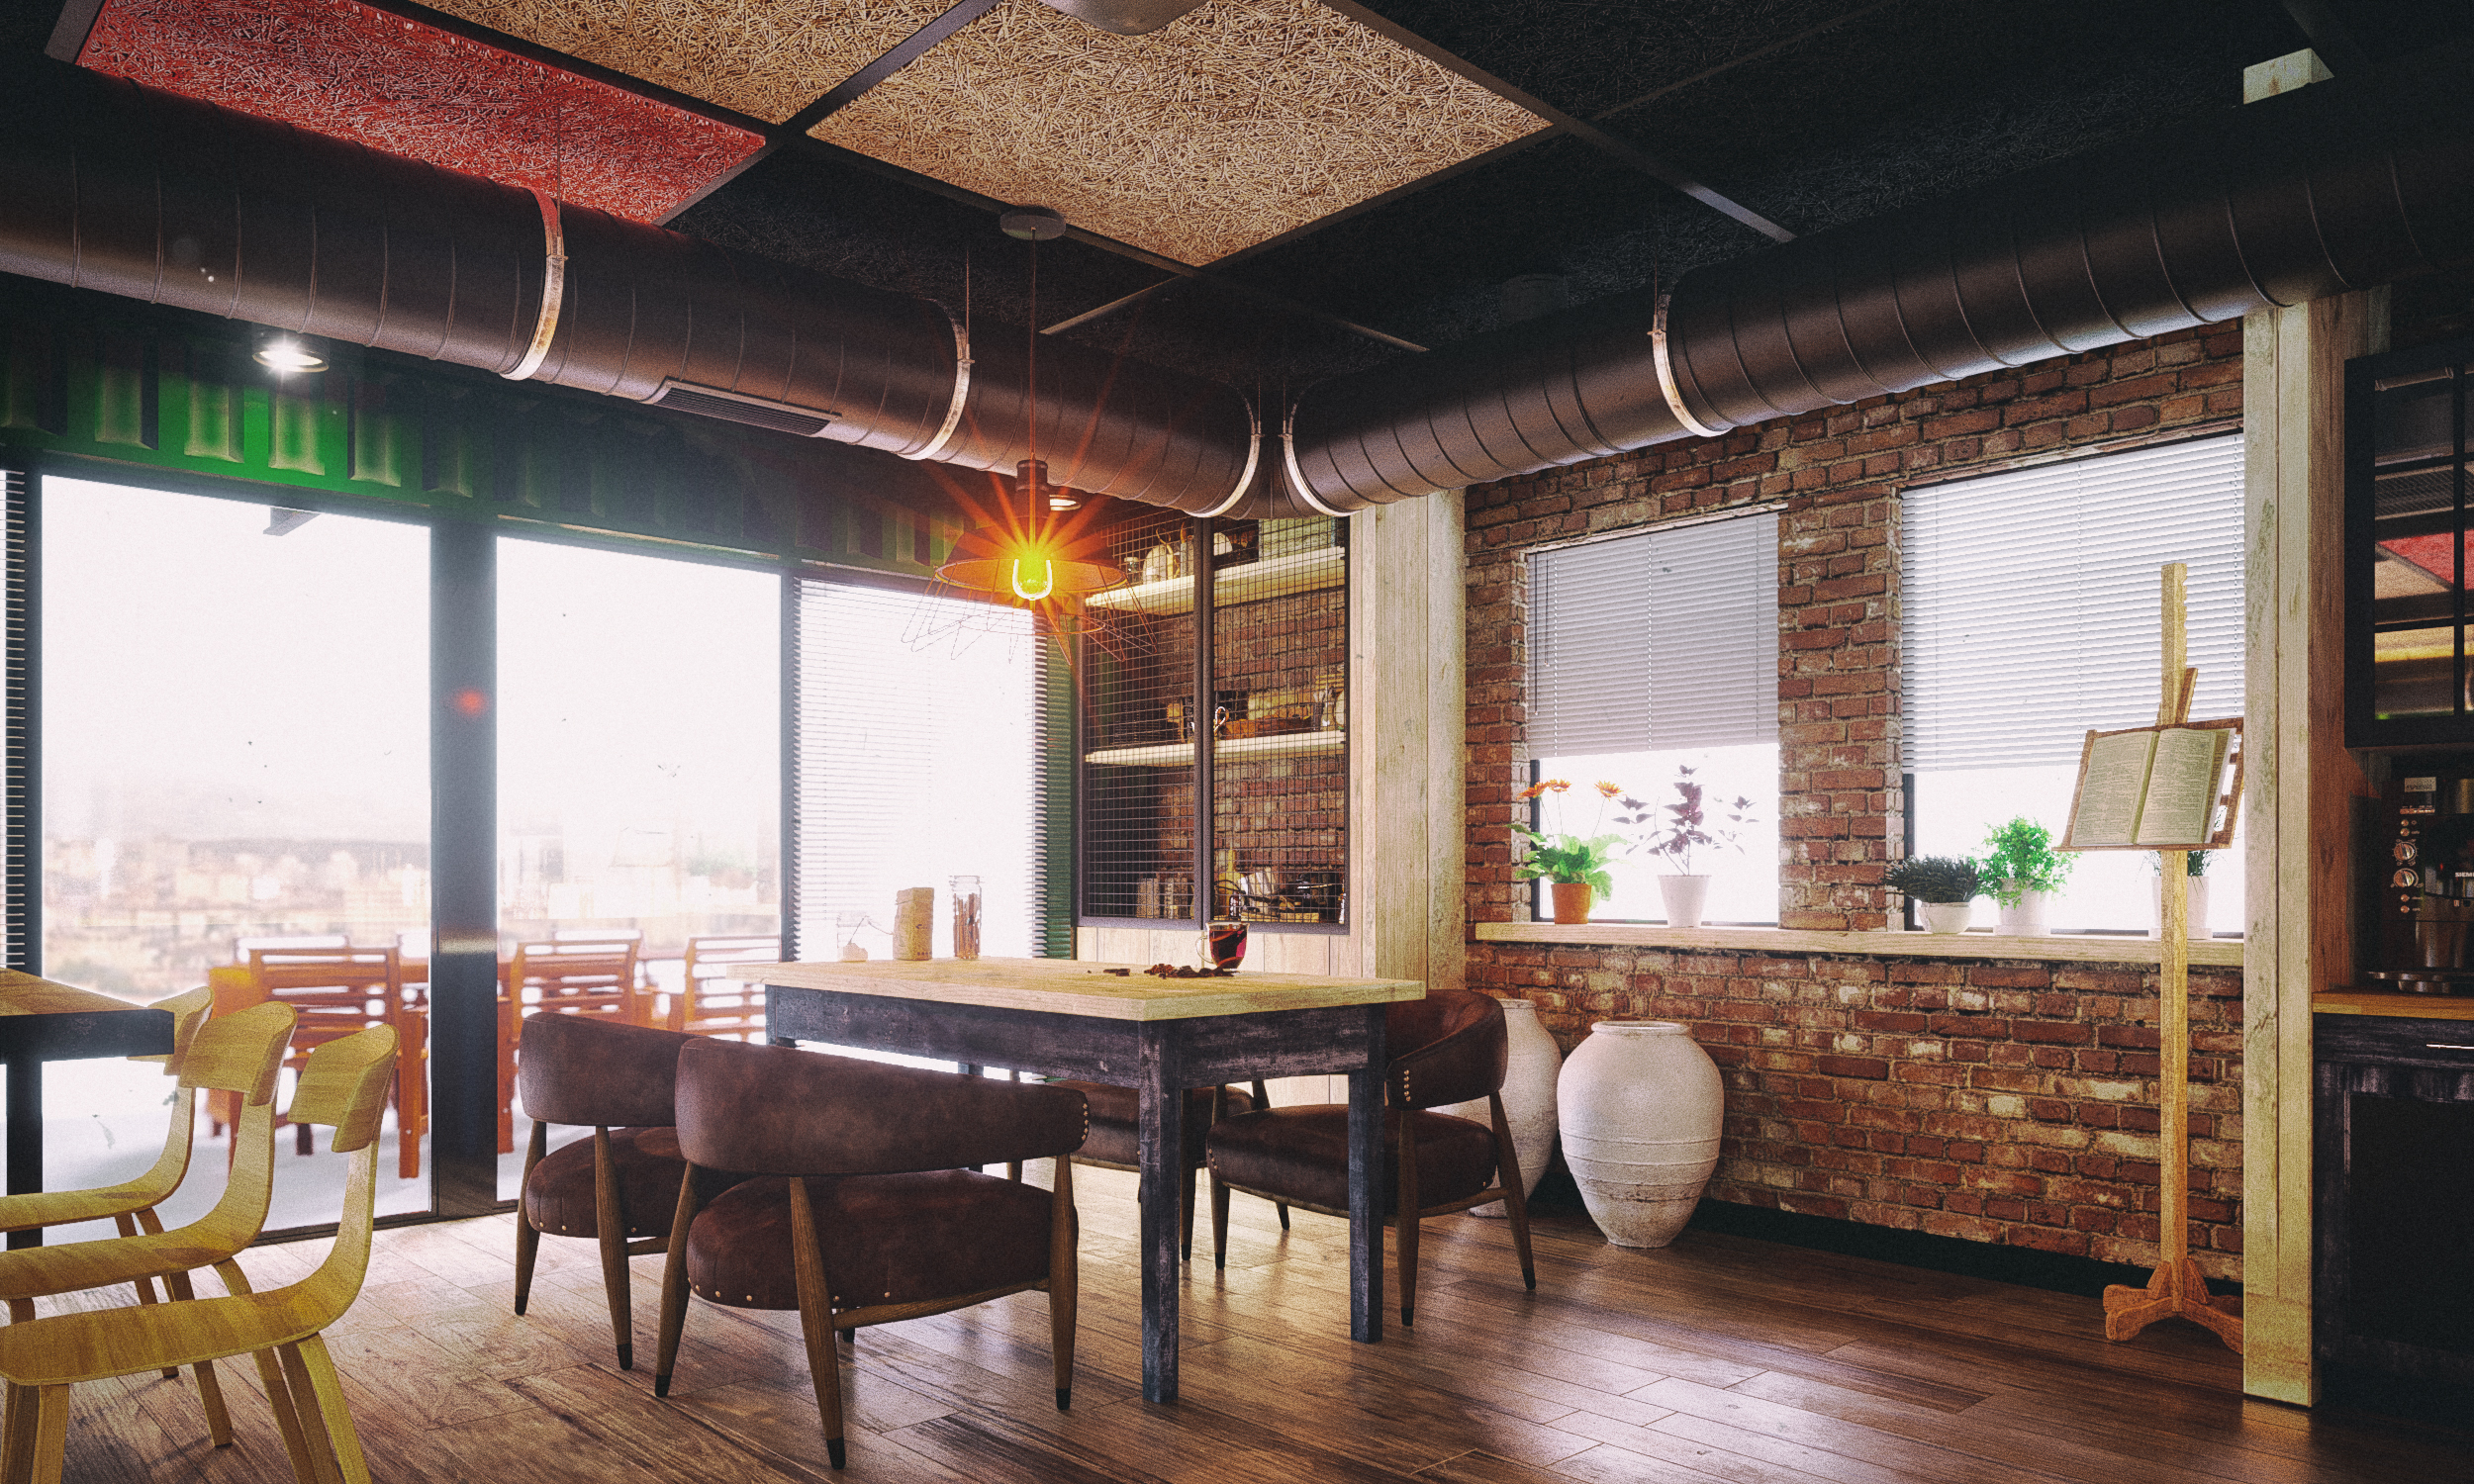 कार्यालय रसोईघर 3d max corona render में प्रस्तुत छवि